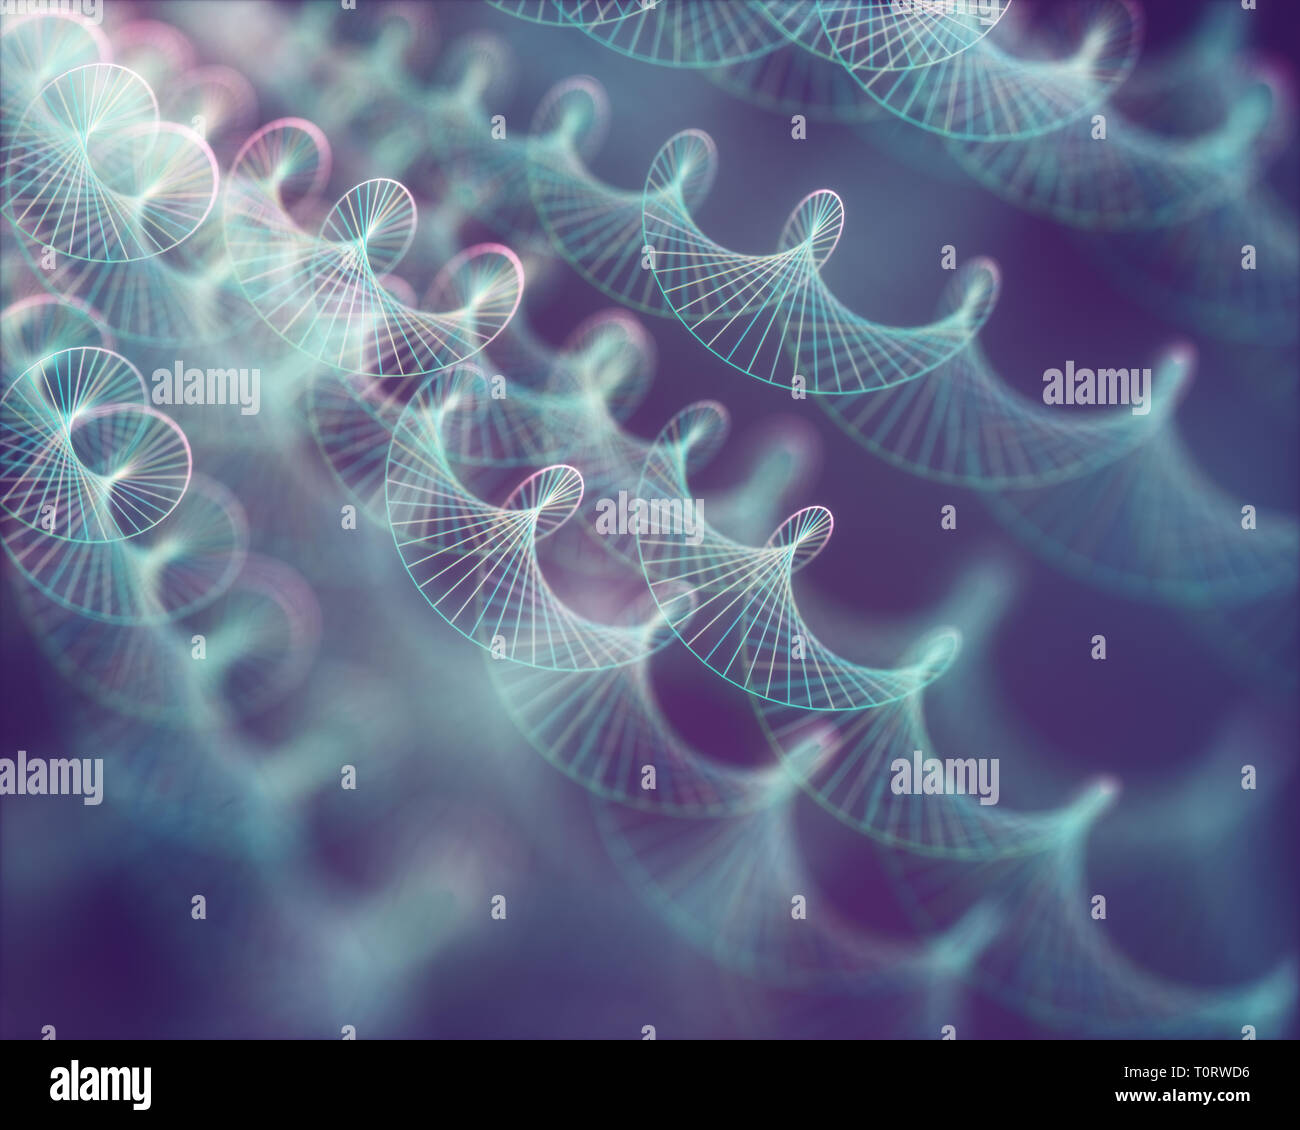 Image de codes génétiques de l'ADN. Concept image pour l'utiliser comme arrière-plan. Illustration 3D couleur. Banque D'Images